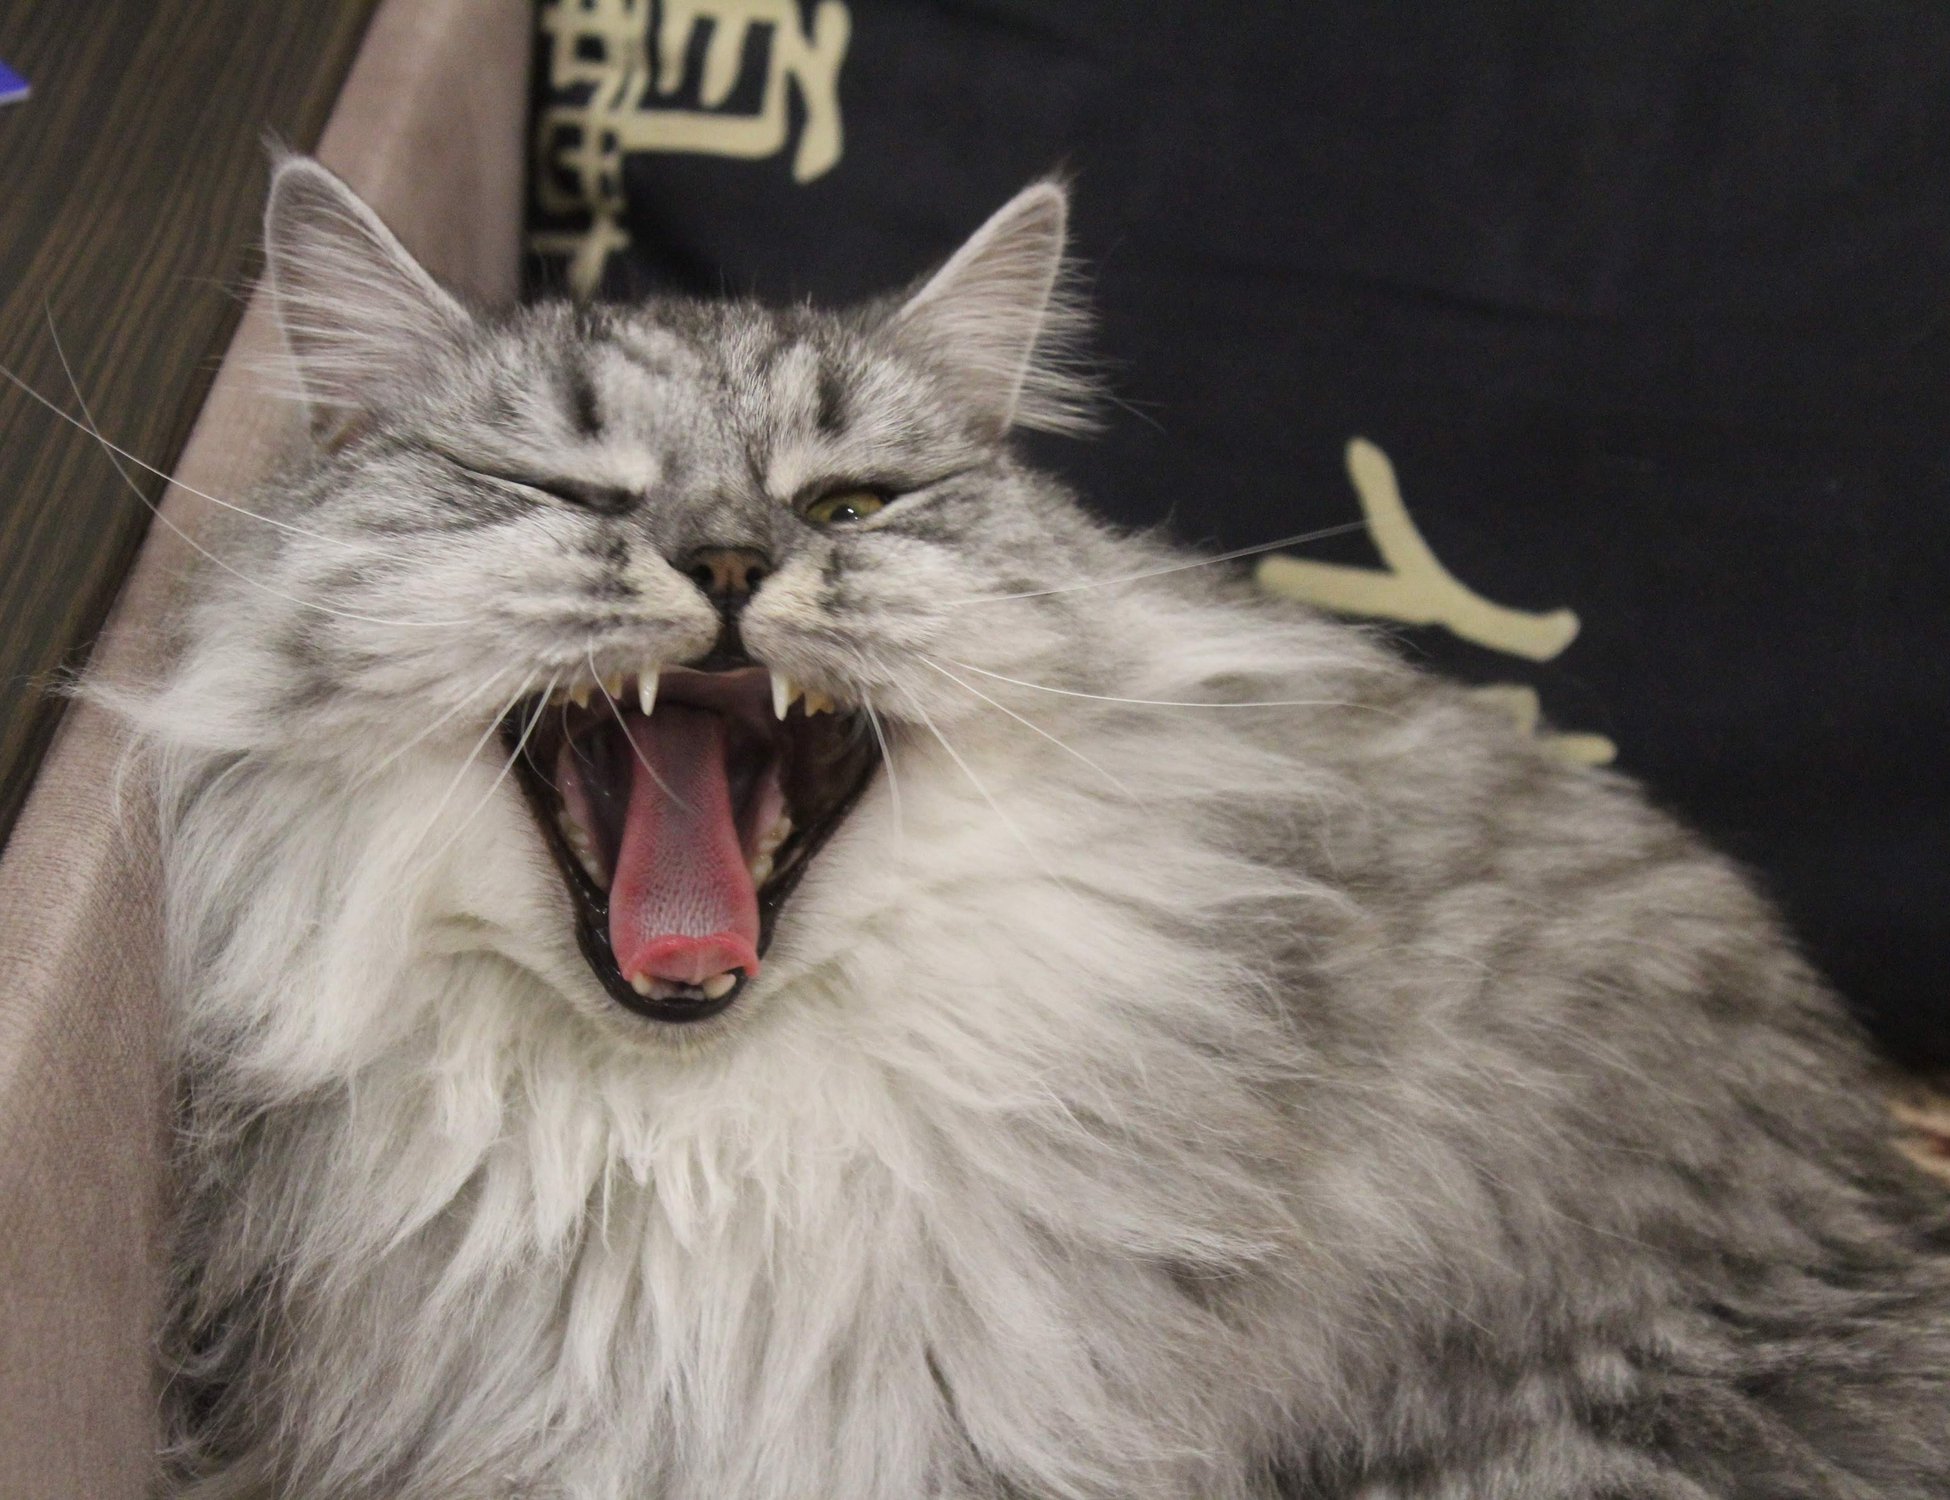 Большой и пушистый серый кот зевает — Фото №1402845